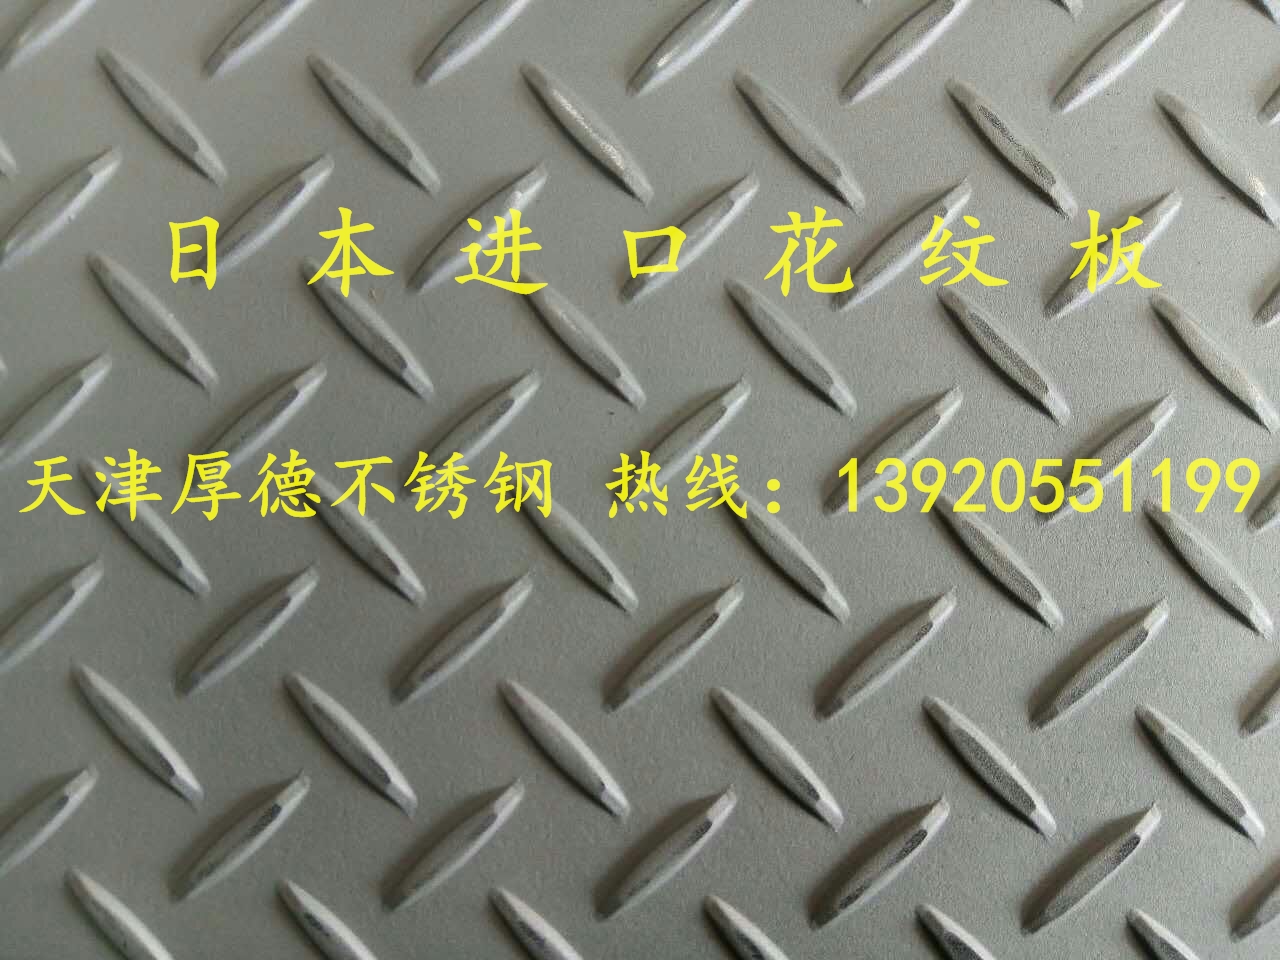 304进口不锈钢花纹板多少钱 天津304进口不锈钢花纹板哪里有 304进口花纹板现货图片